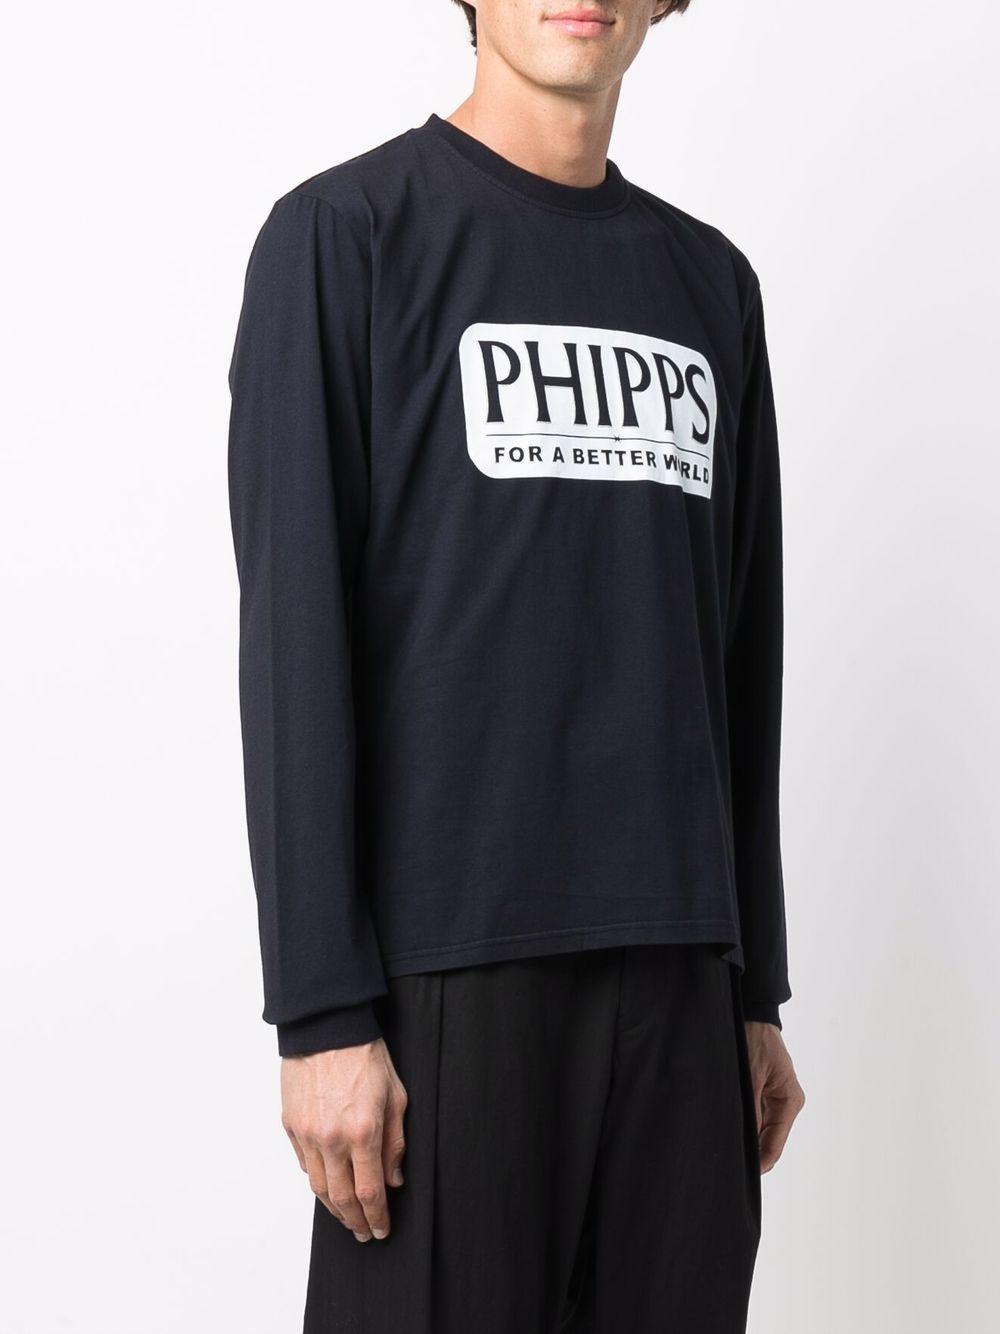 фото Phipps футболка с длинными рукавами и логотипом